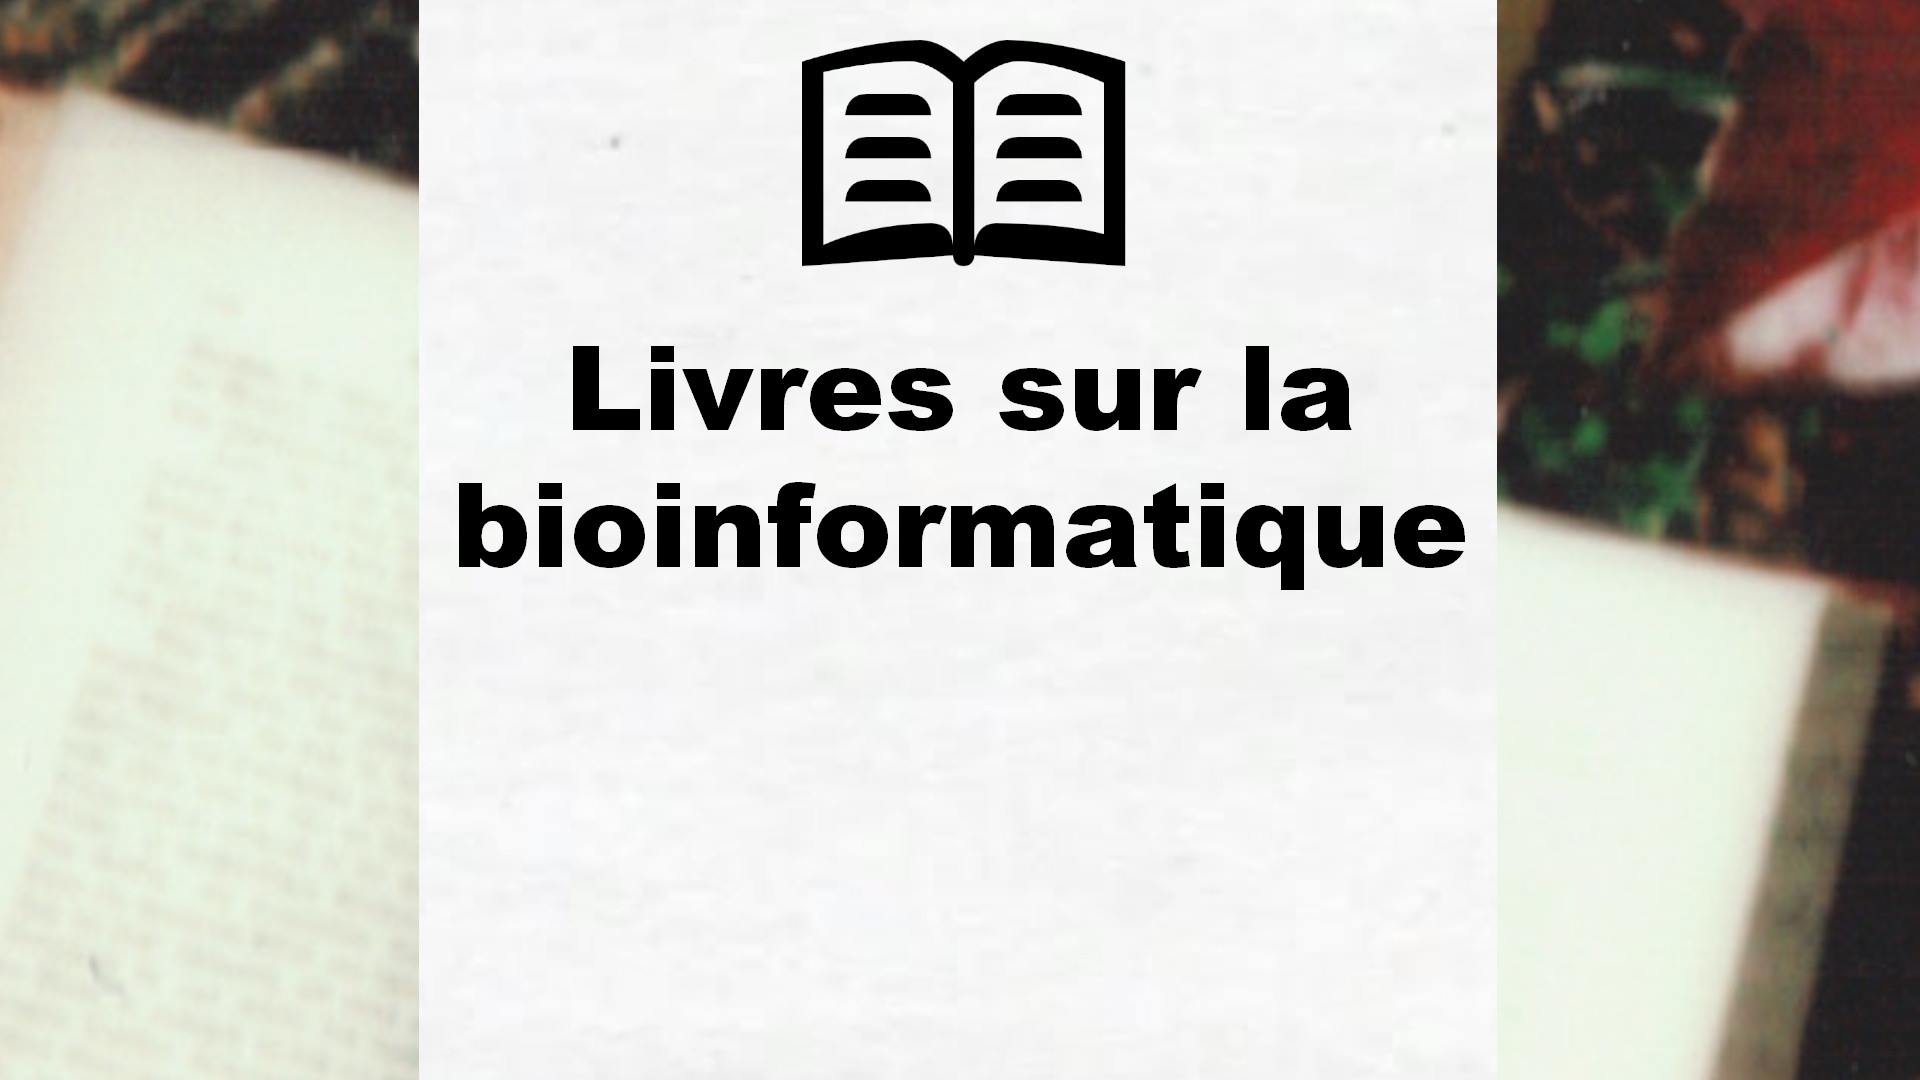 Livres sur la bioinformatique